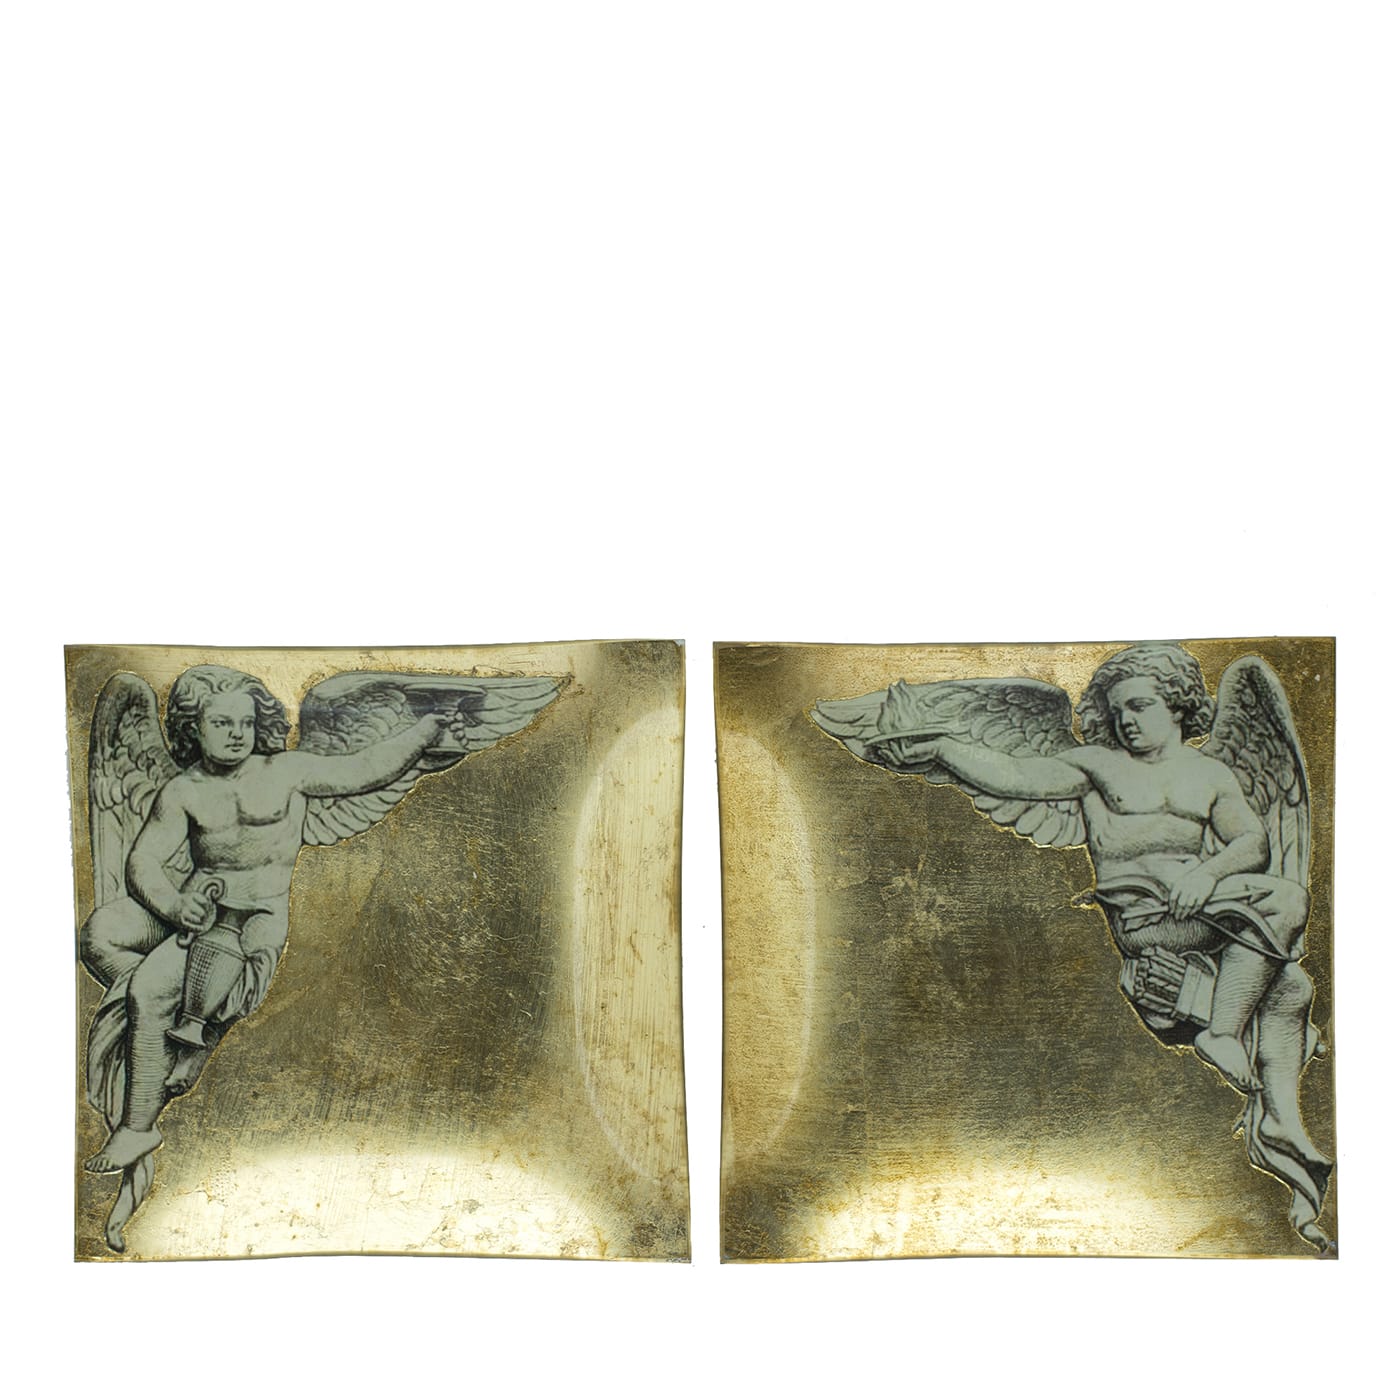 Putto Set of 2 Decorative Plates - Pulchra Imago